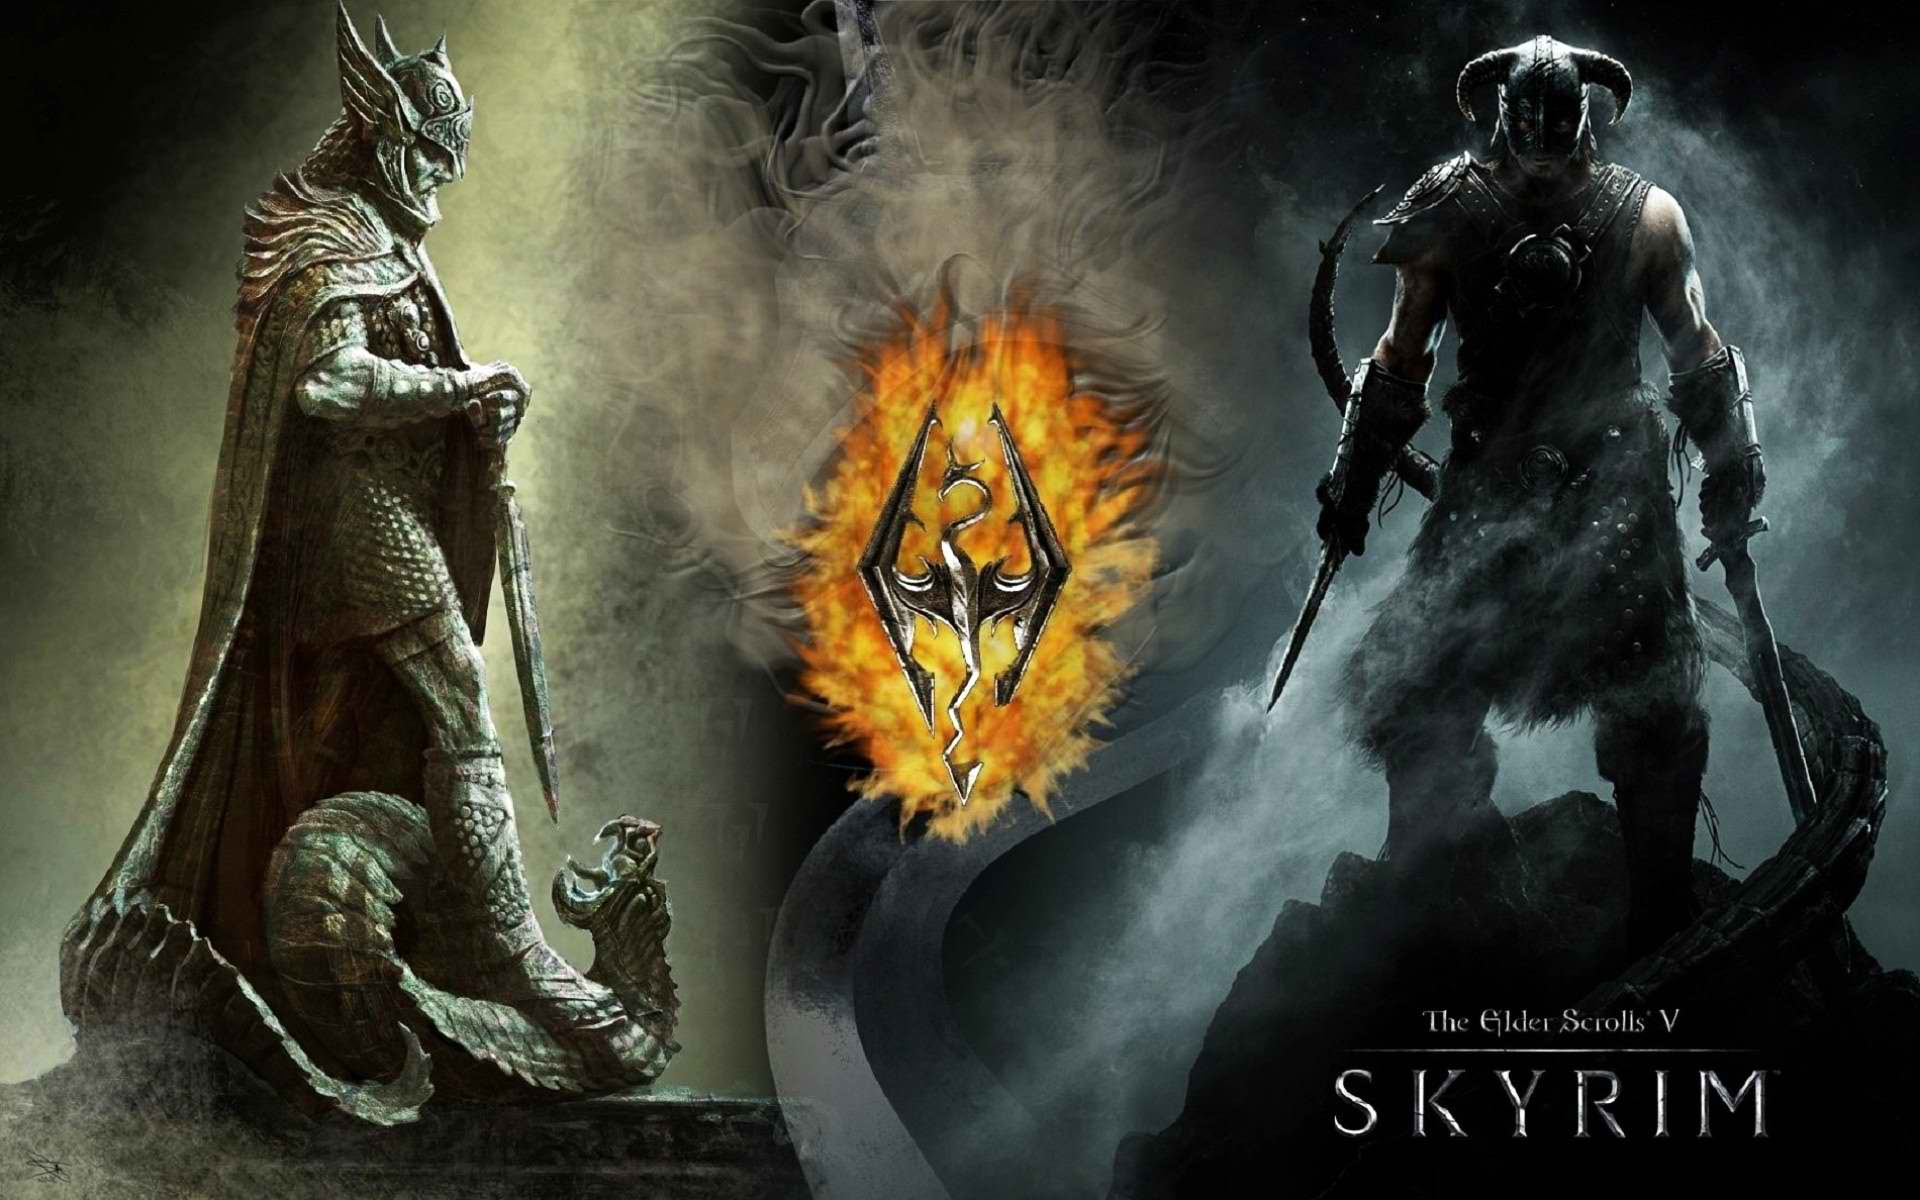 The Elder Scrolls V Skyrim Wallpaper , HD Wallpaper & Backgrounds